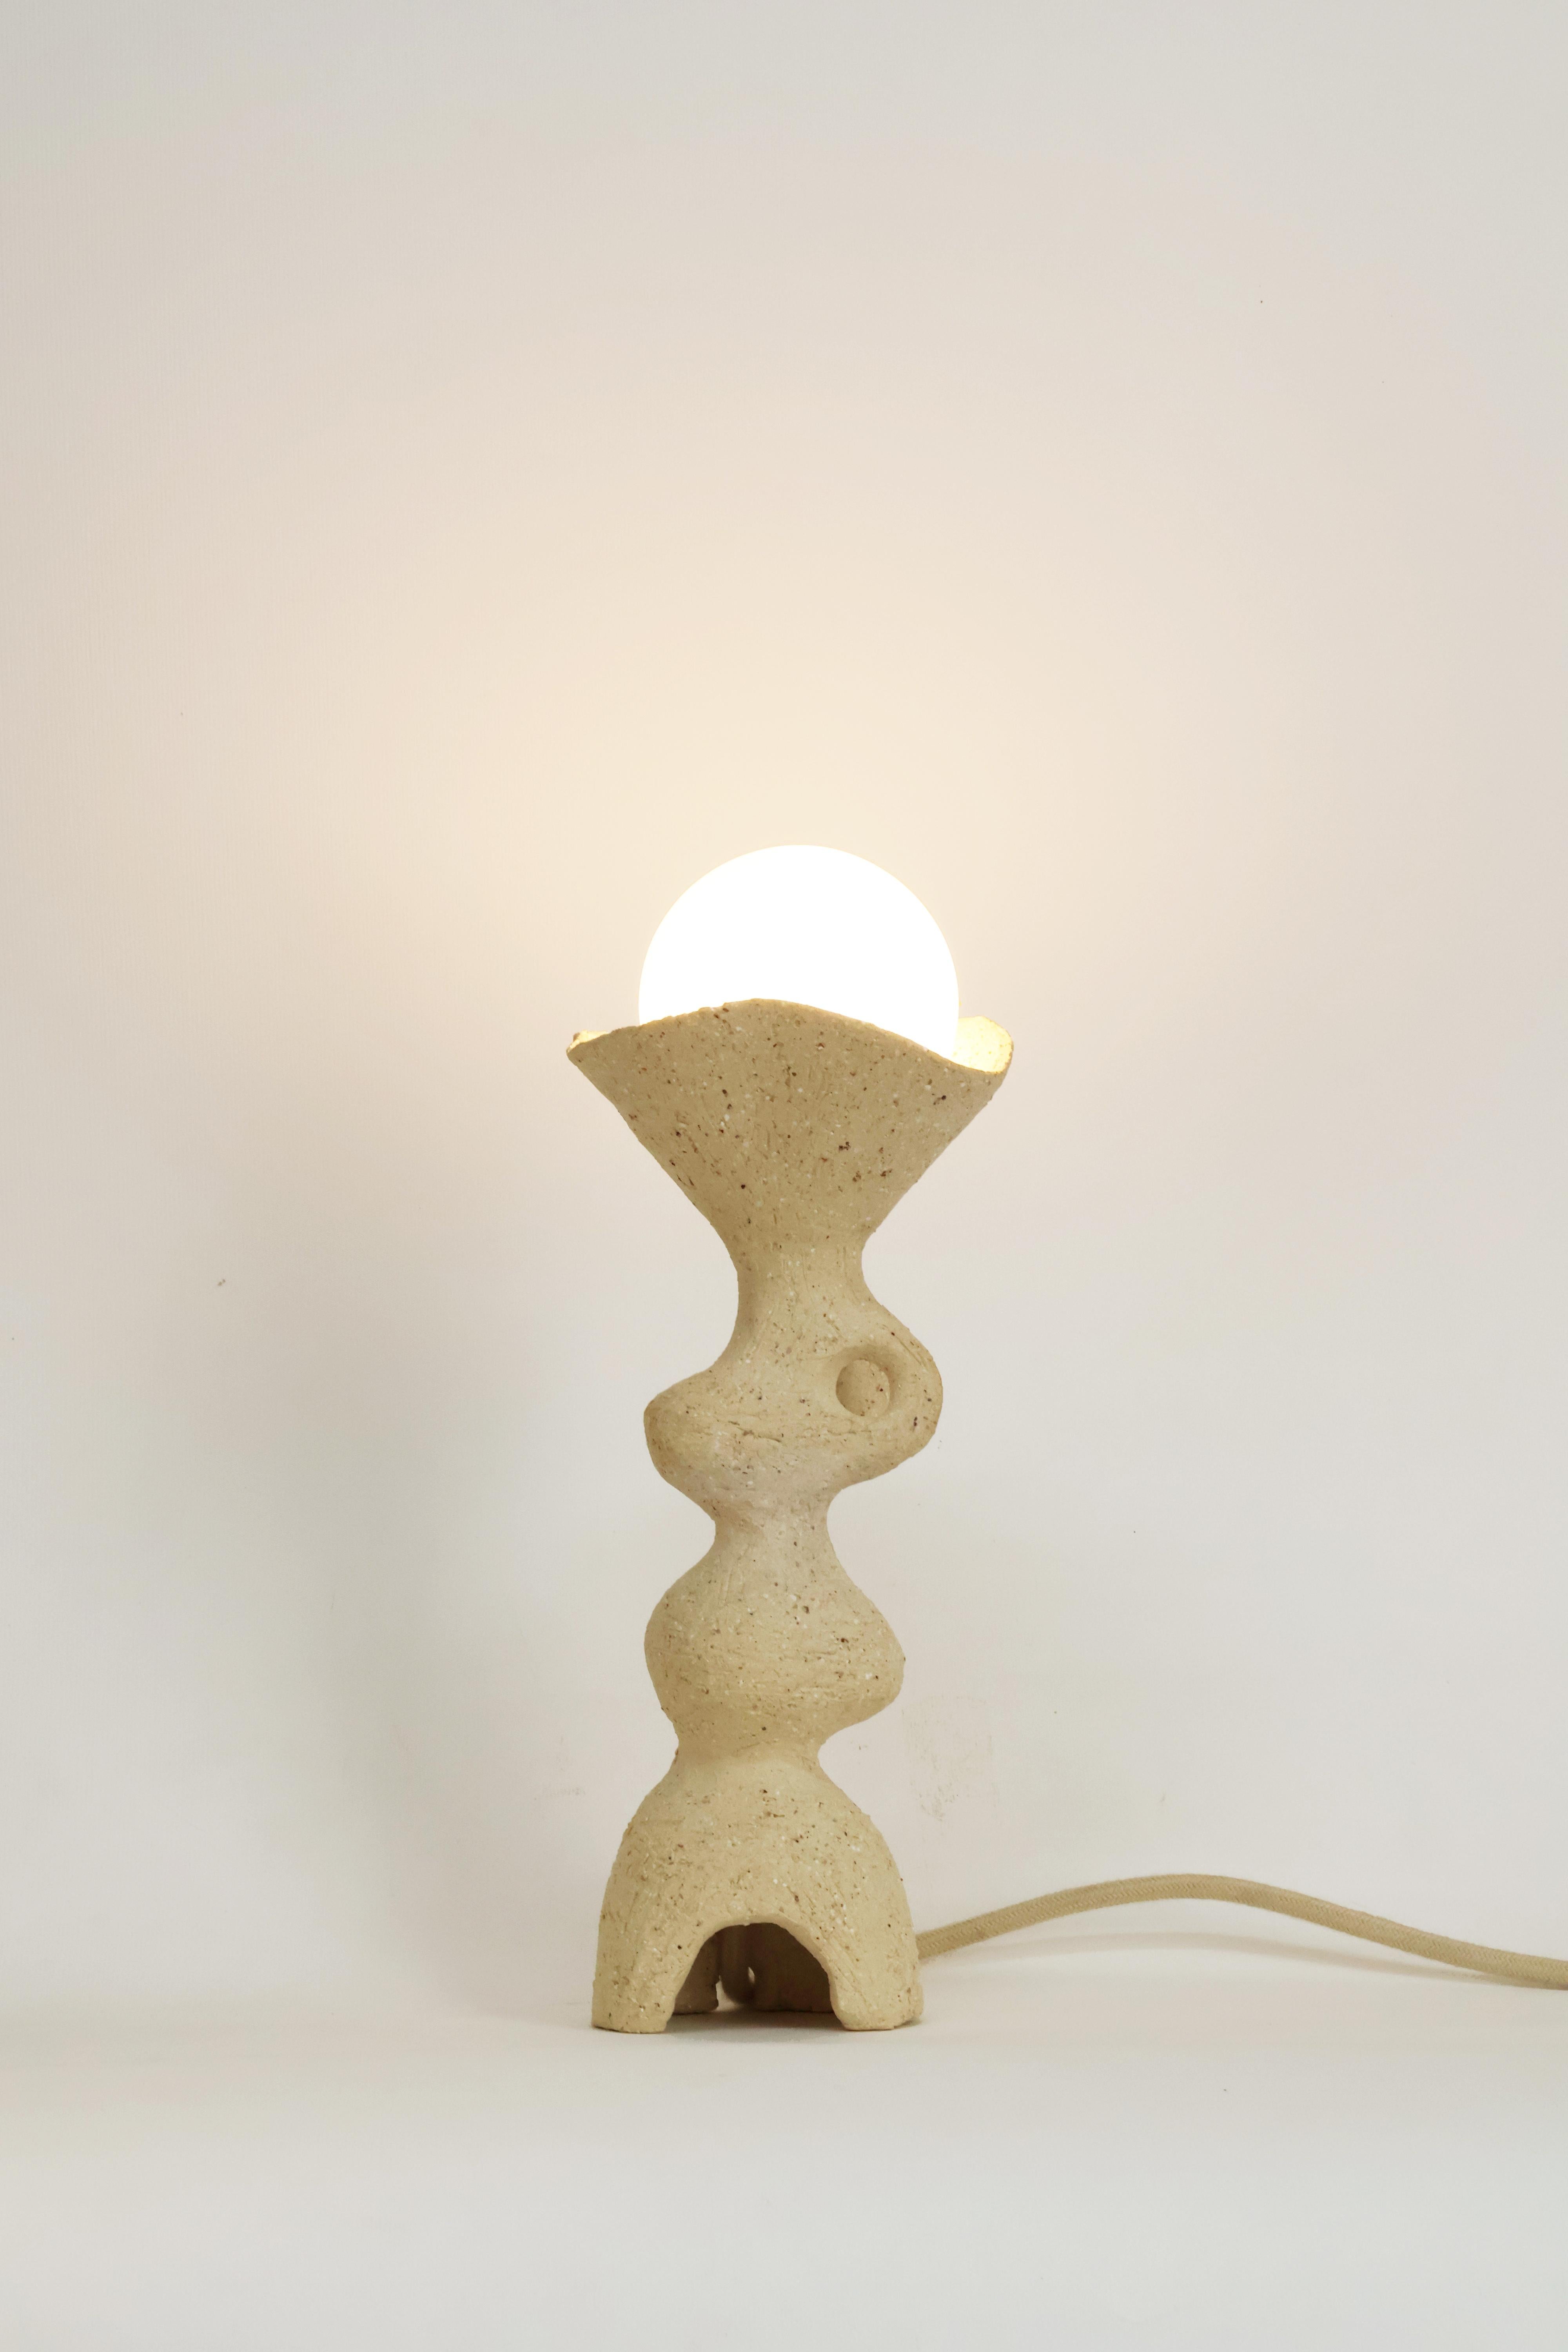 Lampe de table Totem II de Camila Apaez
Unique en son genre
MATERIAL : Grès, argile
Dimensions : 10 x H 31 cm

Ila Ceramica est née d'un processus de recherche intérieure où la céramique est devenue un espace de présence, de silence, de toucher et